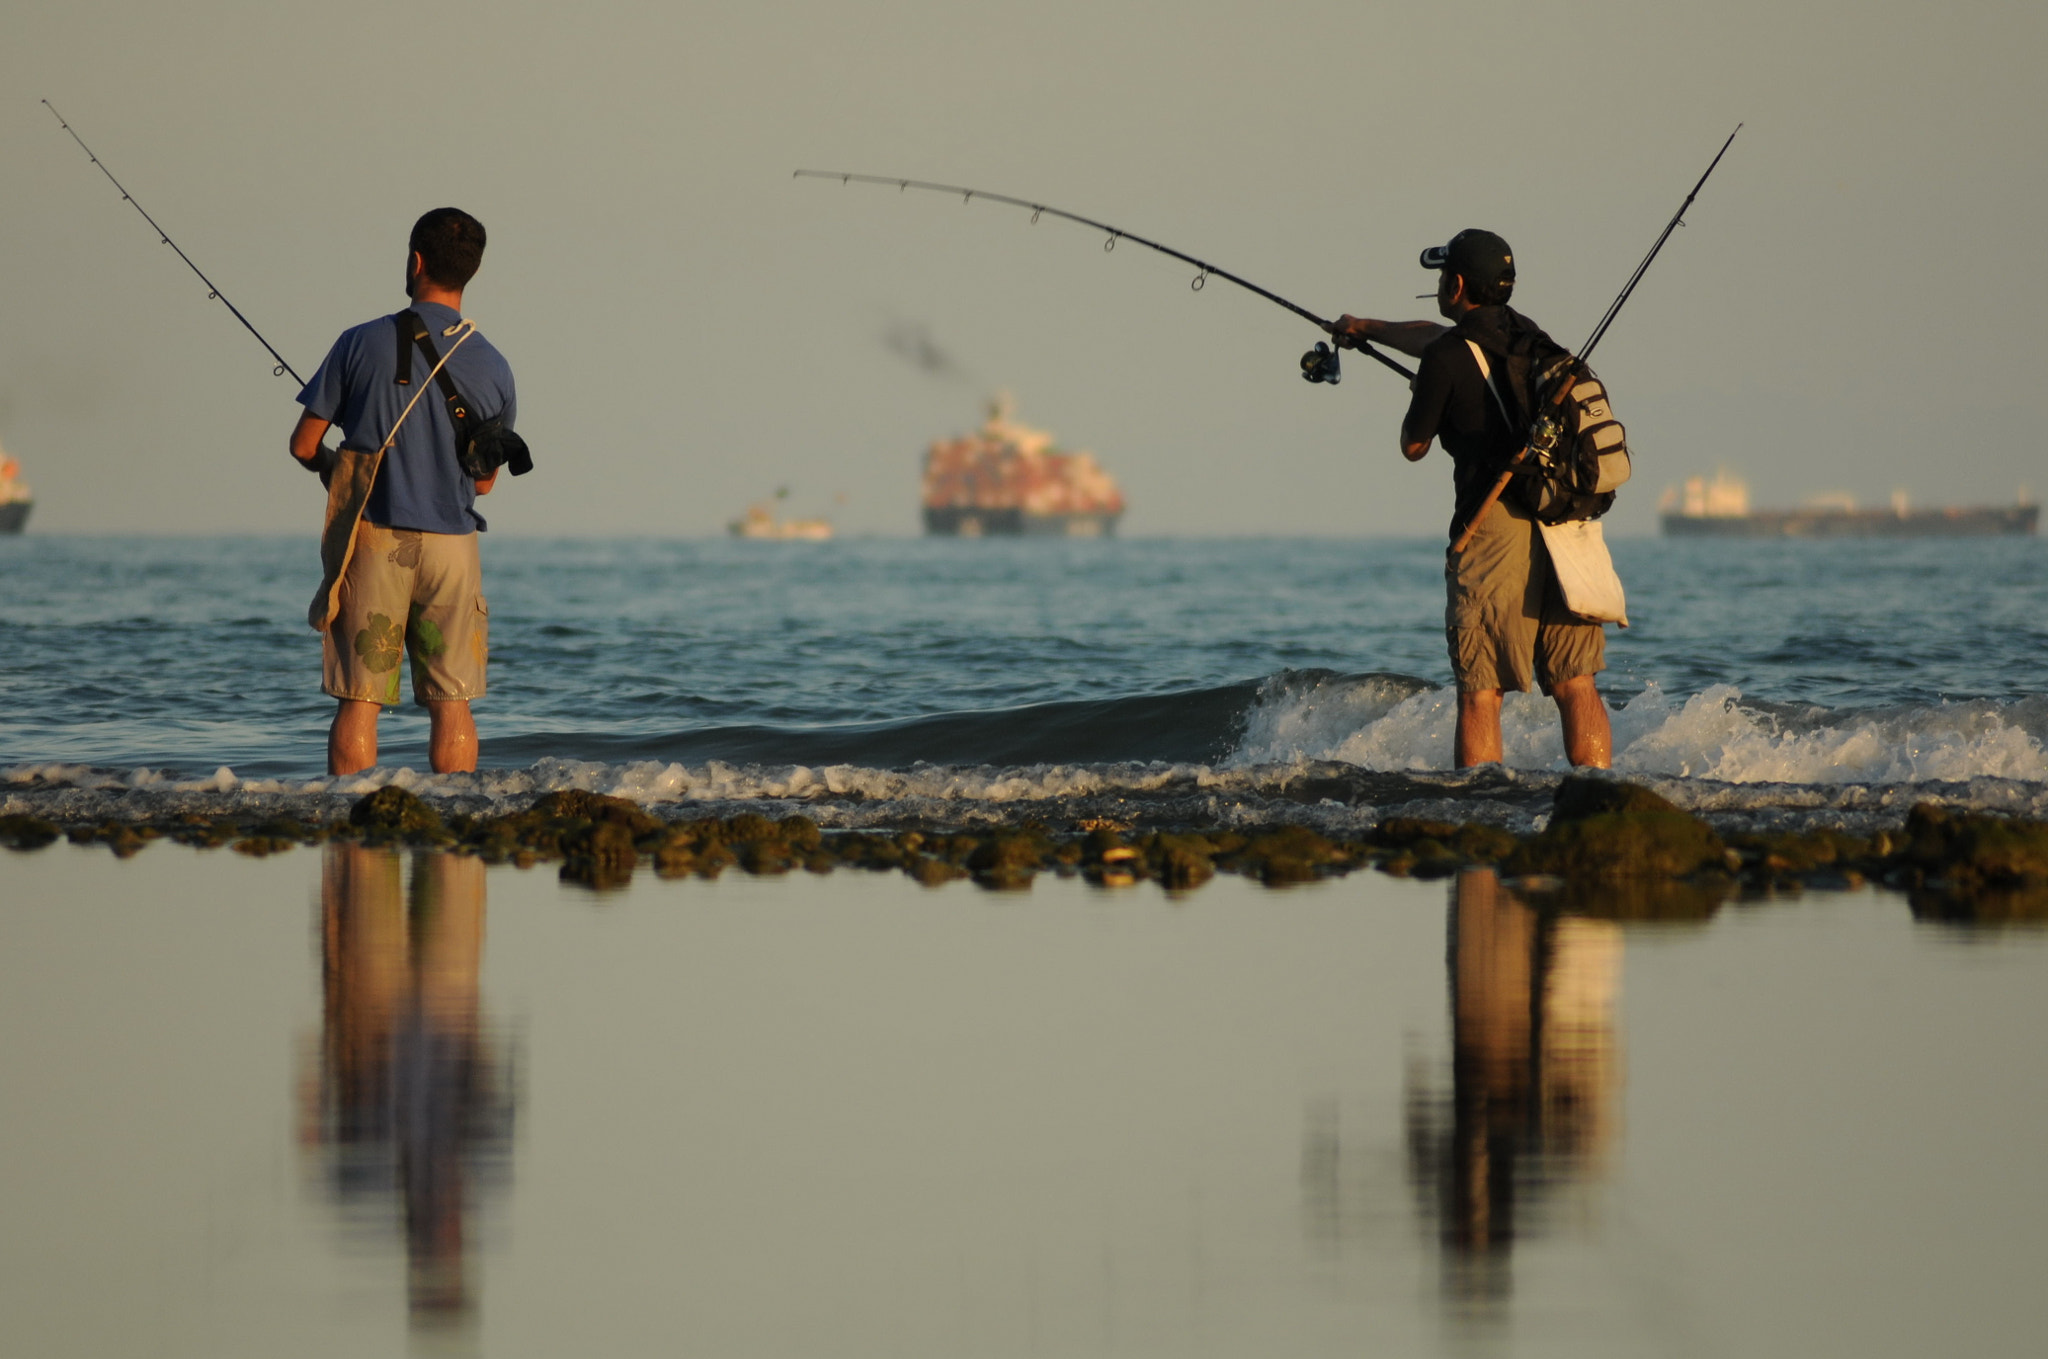 Nikon D300S + AF Zoom-Nikkor 70-300mm f/4-5.6D ED sample photo. Fishing team photography